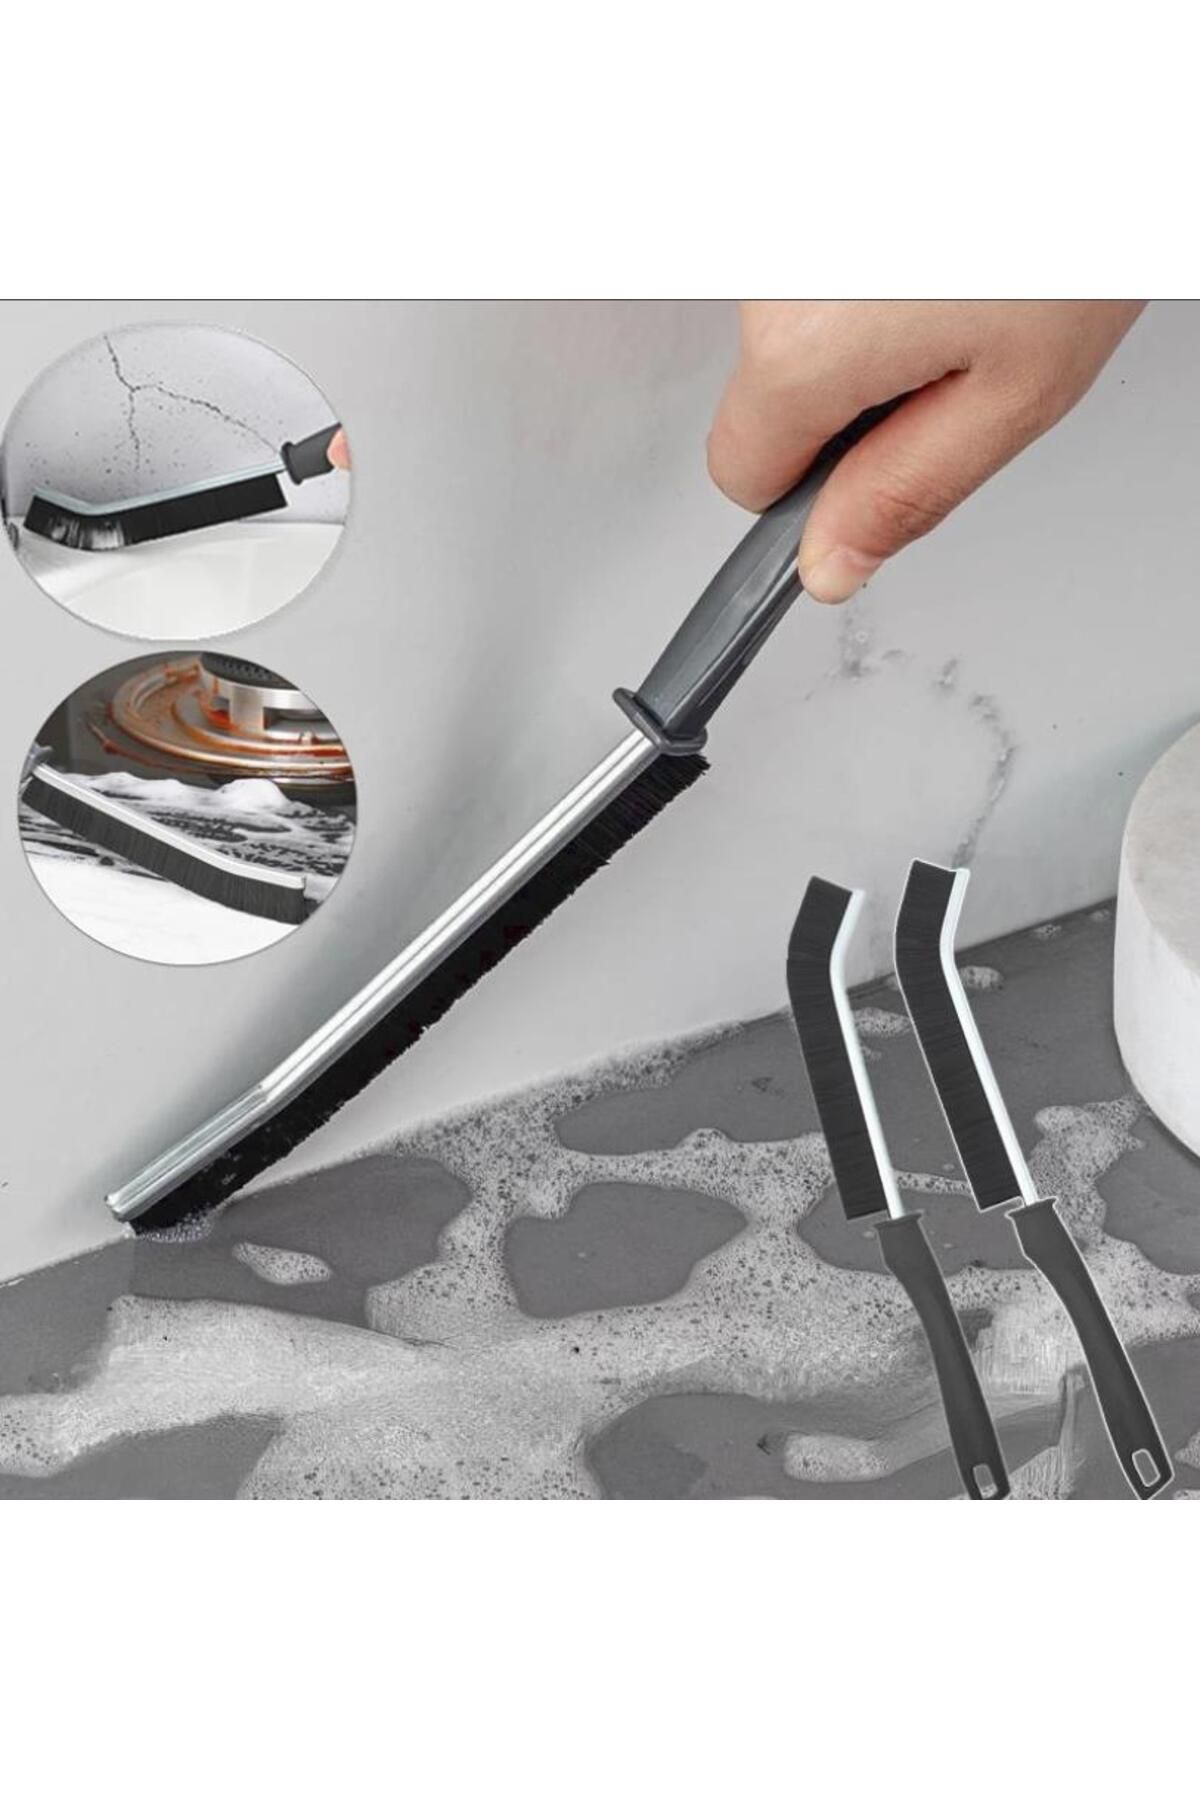 Hayveys Uzun İnce Saplı Çok Amaçlı Kıl Temizlik Fırçası Banyo Mutfak Detay Temizleme